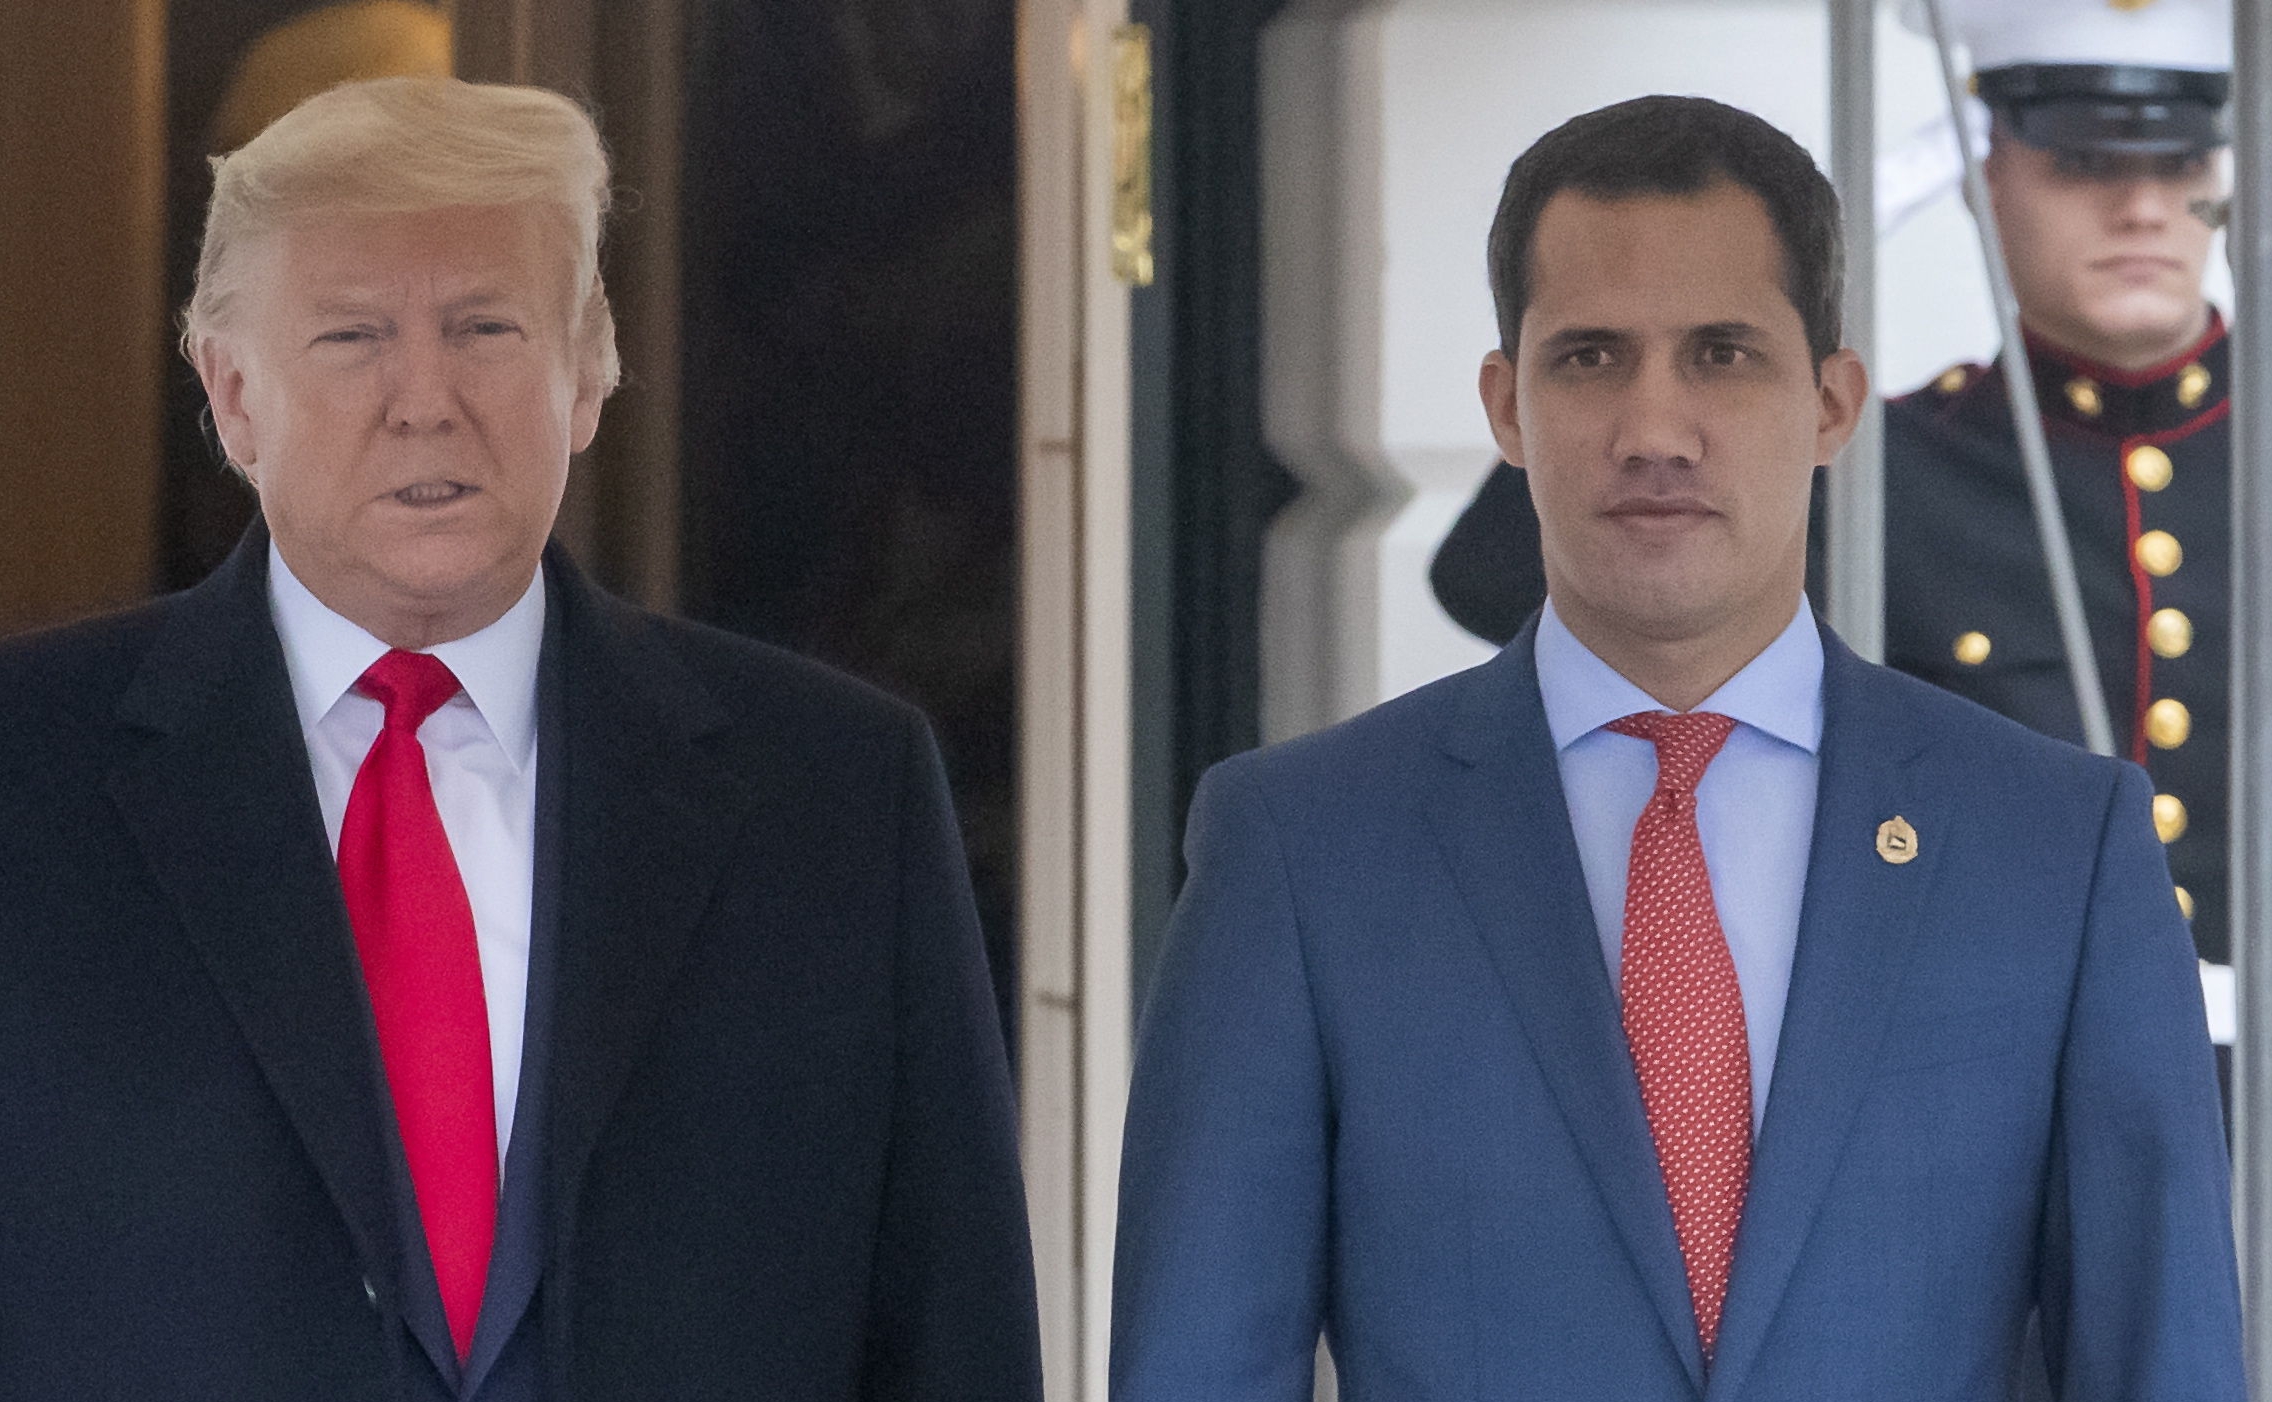 El presidente de Estados Unidos, Donald Trump, y el presidente encargado de Venezuela, Juan Guaidó, en la Casa Blanca. (Foto Prensa Libre: EFE)